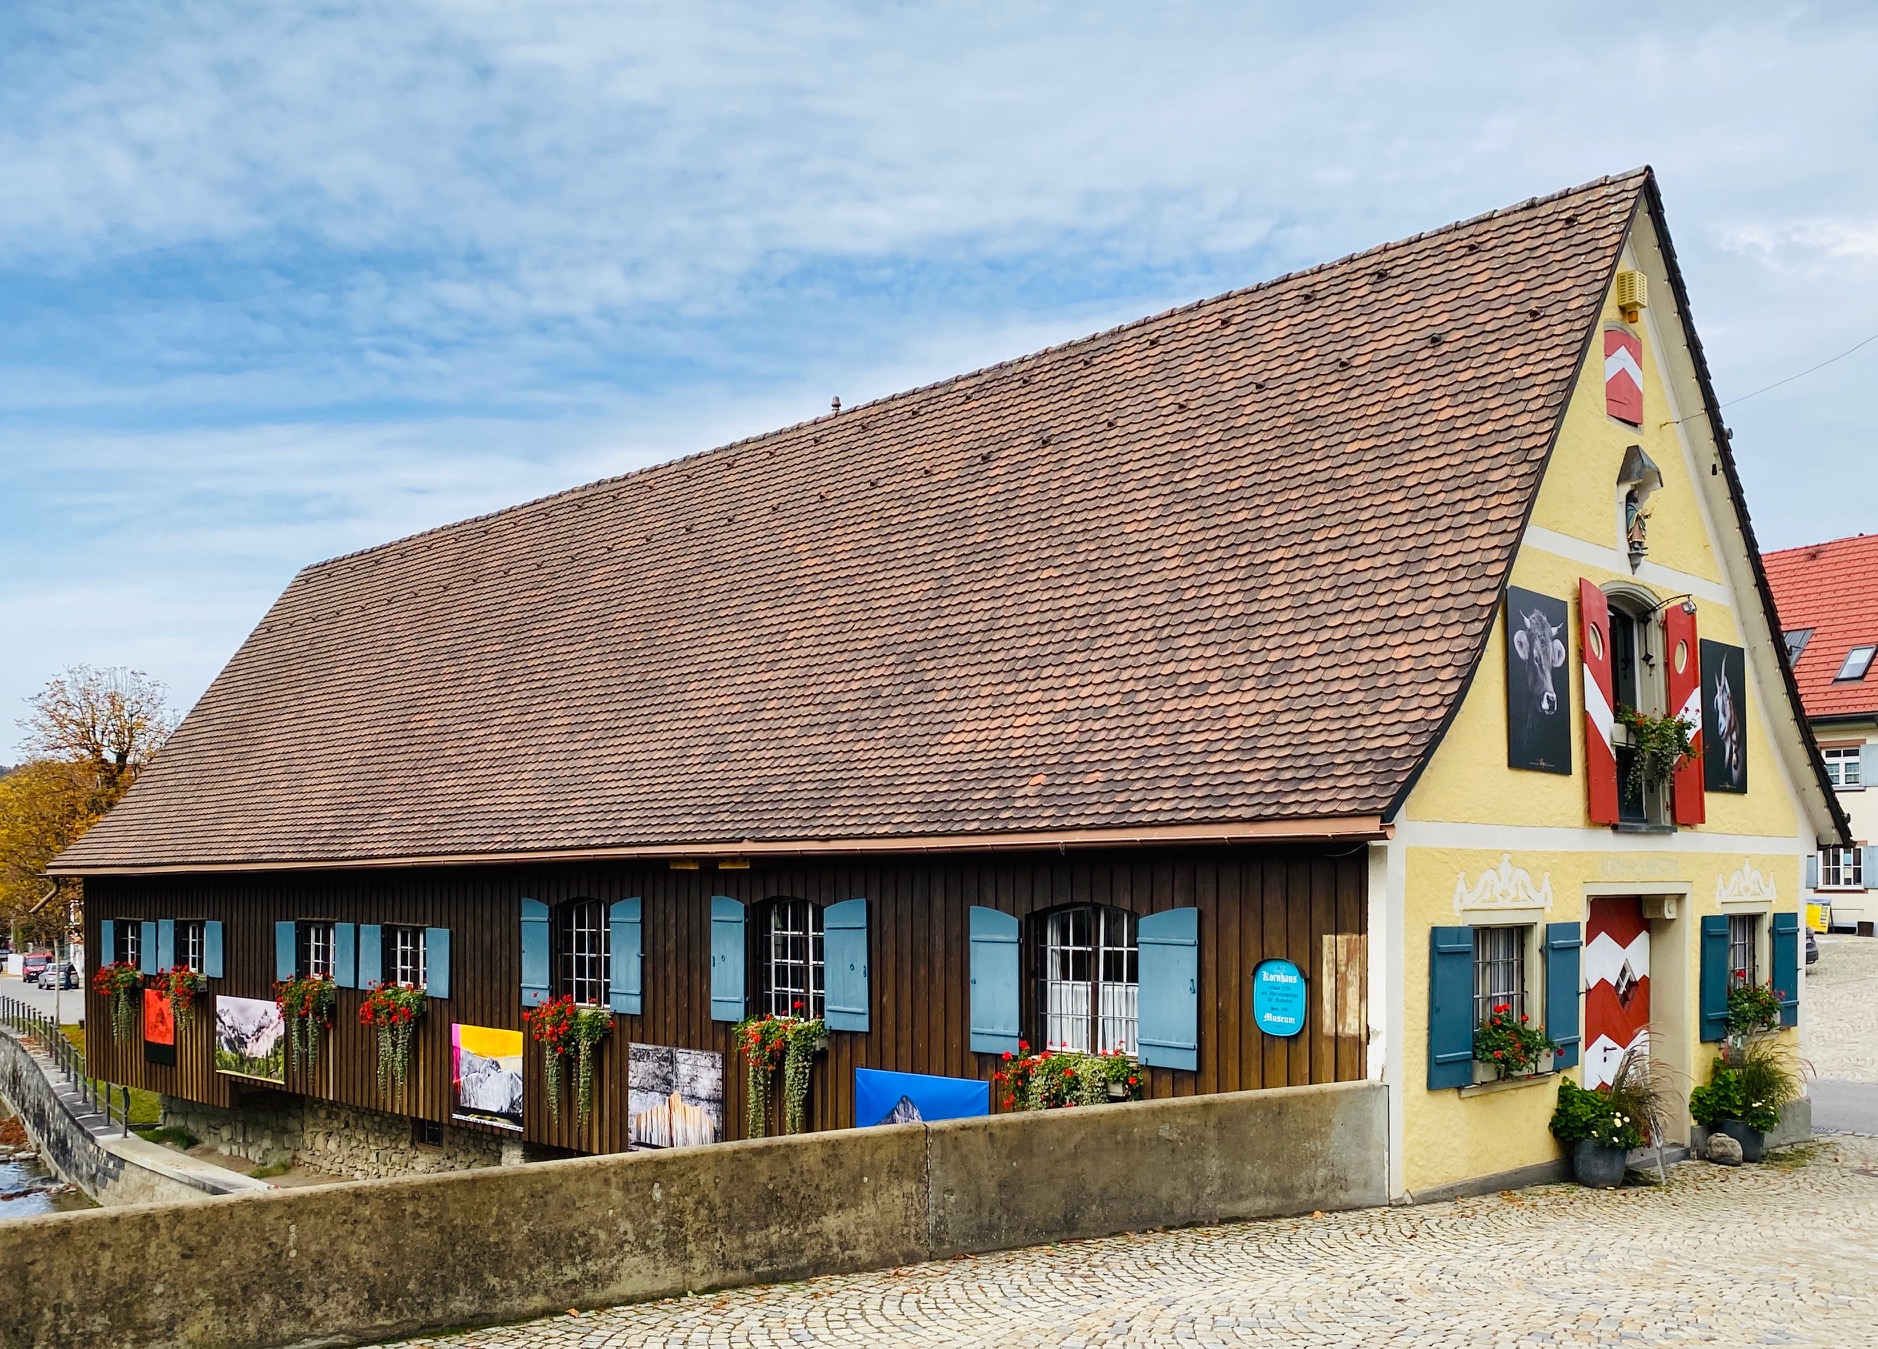  Kornhausmuseum am Hausbach mit einer Bilderausstellung an der Fassade - das Bild wird mit Klick vergößert 